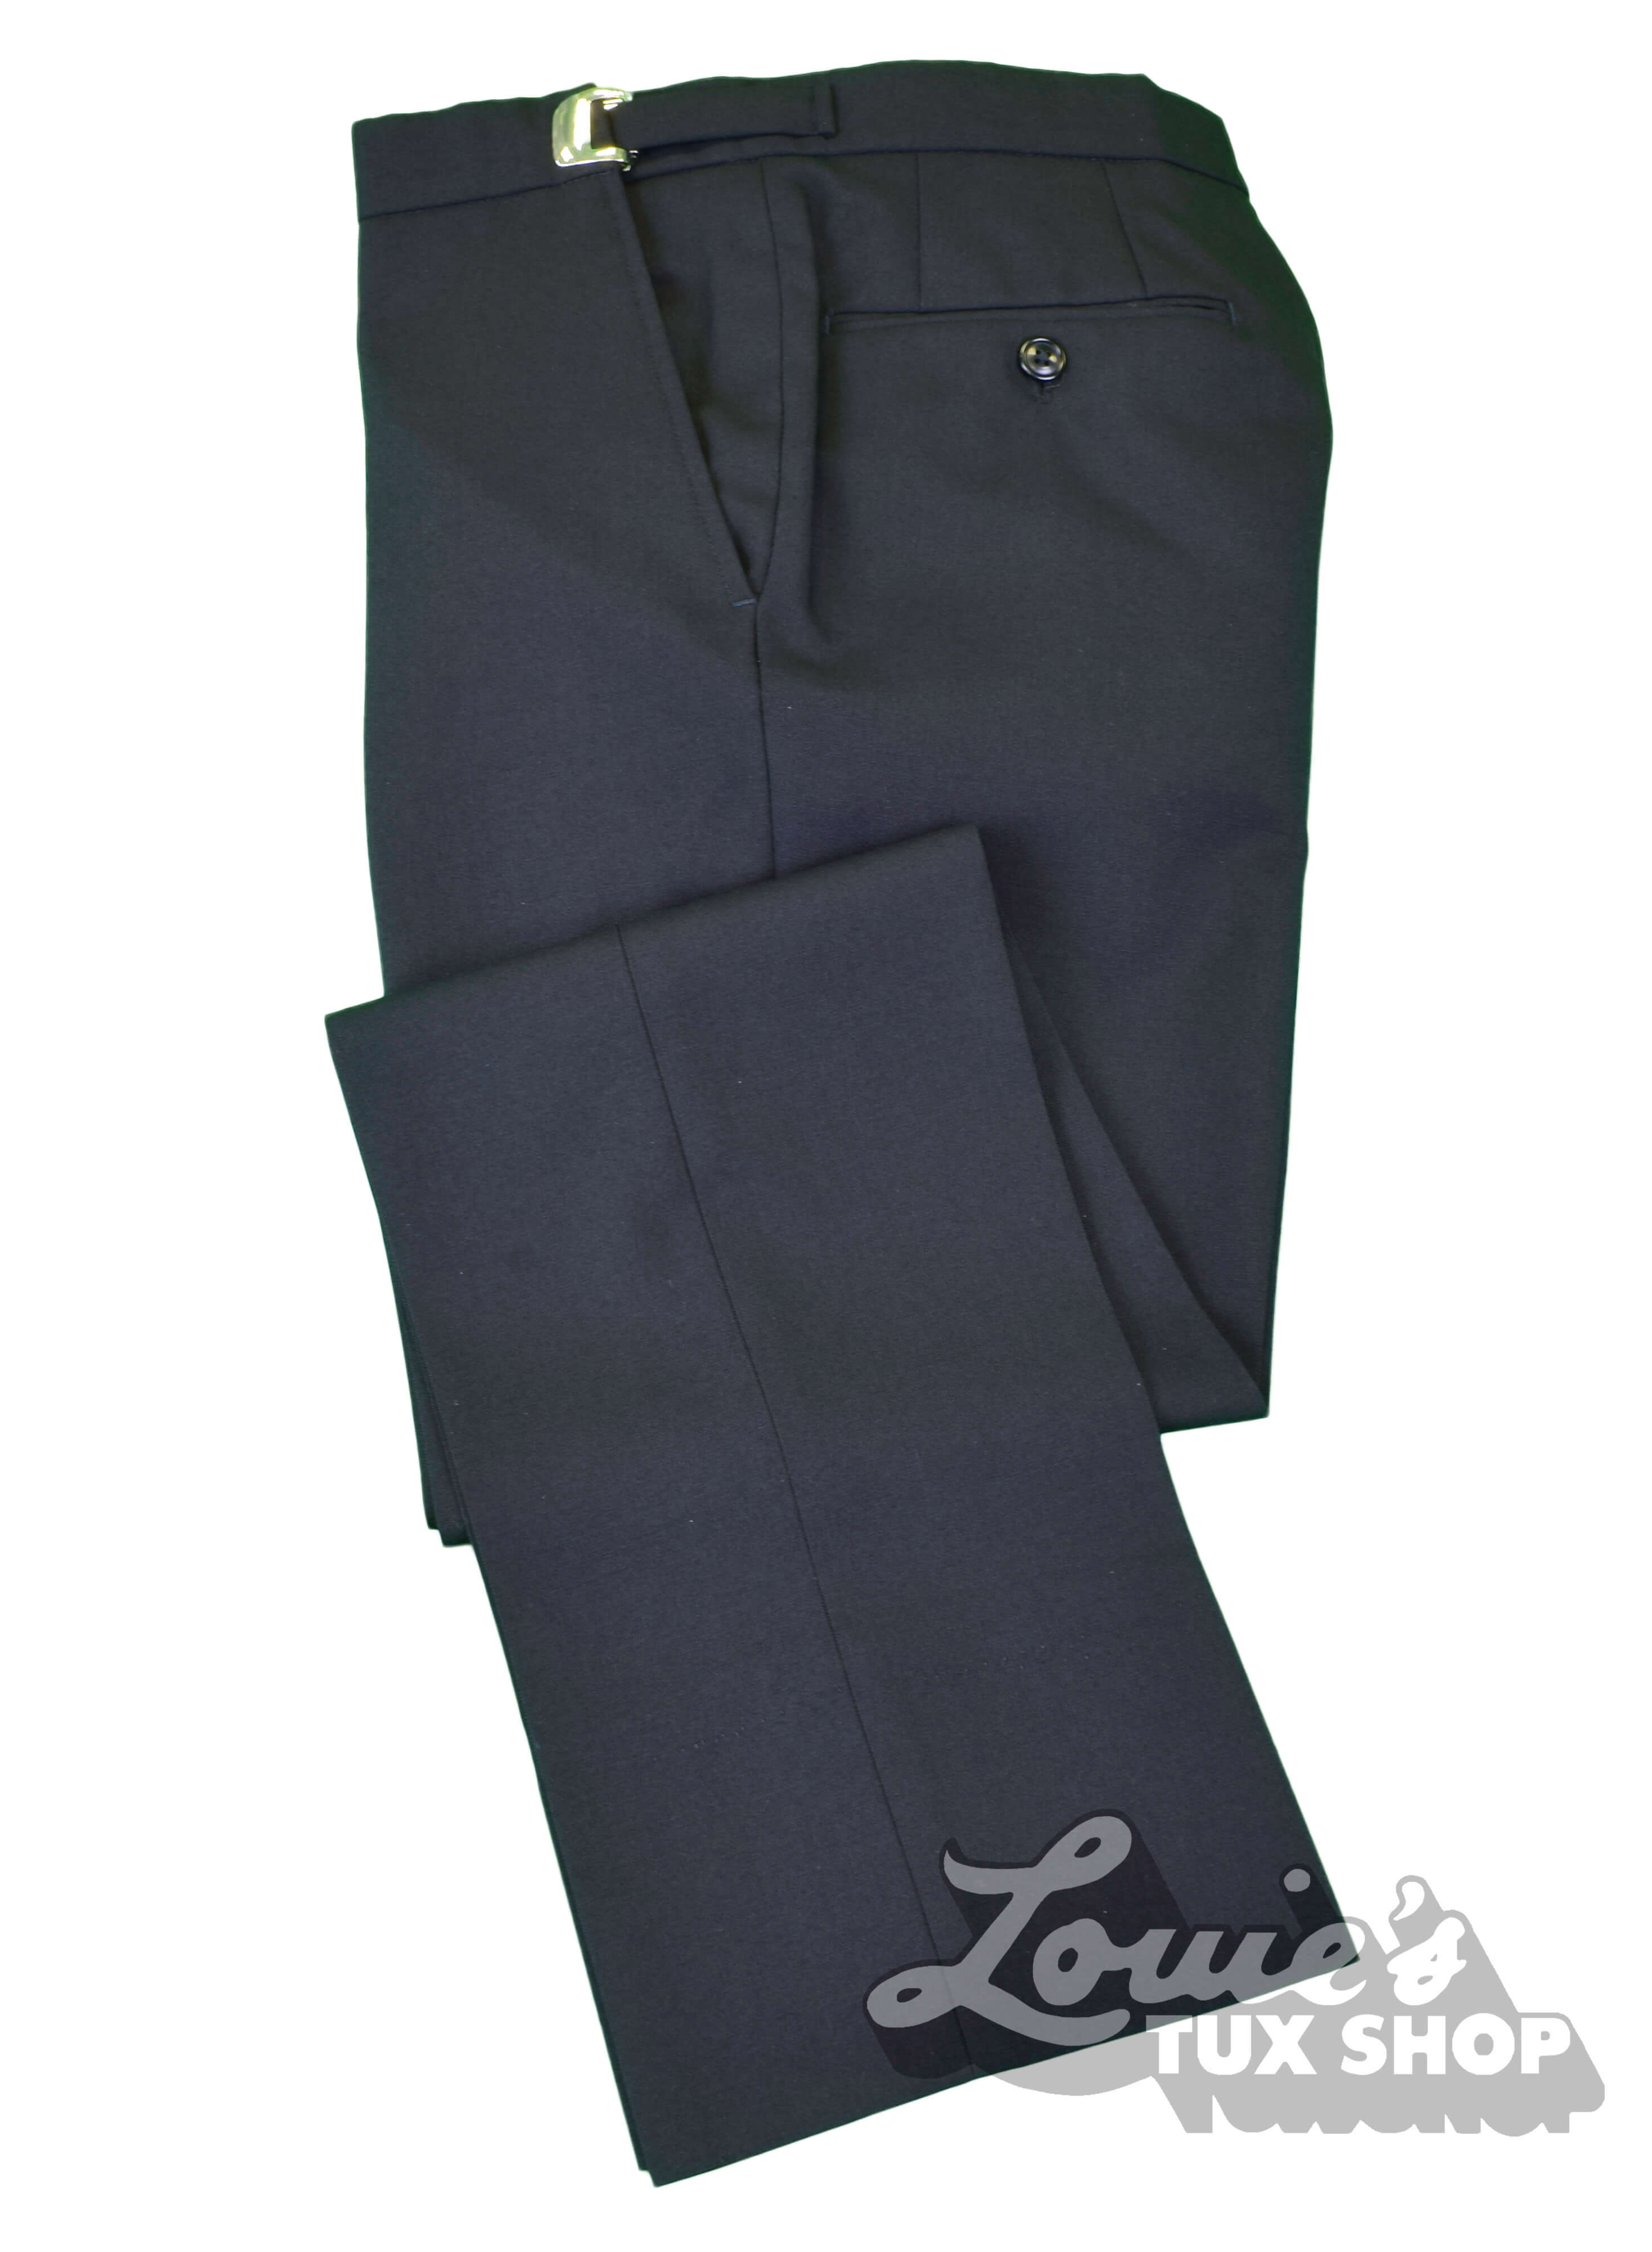 COOFANDY Men's Classic Fit Flat Front Dress Pants No Iron Premium Casual  Pants Expandable Waist Suit Pants at Amazon Men's Clothing store